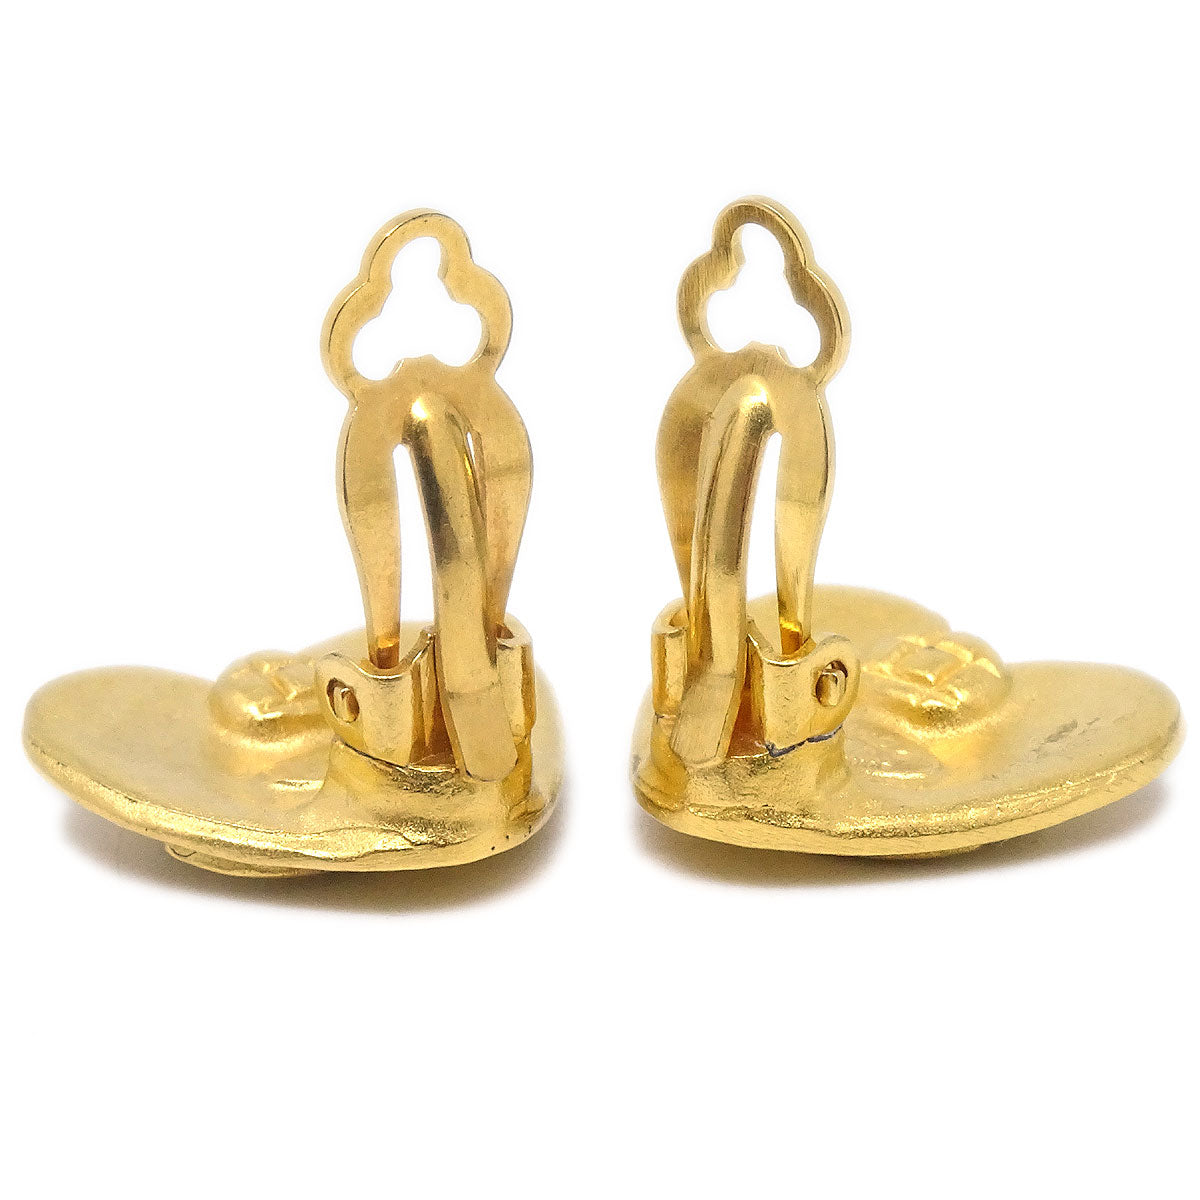 Chanel 1995 Heart Earrings Gold Small